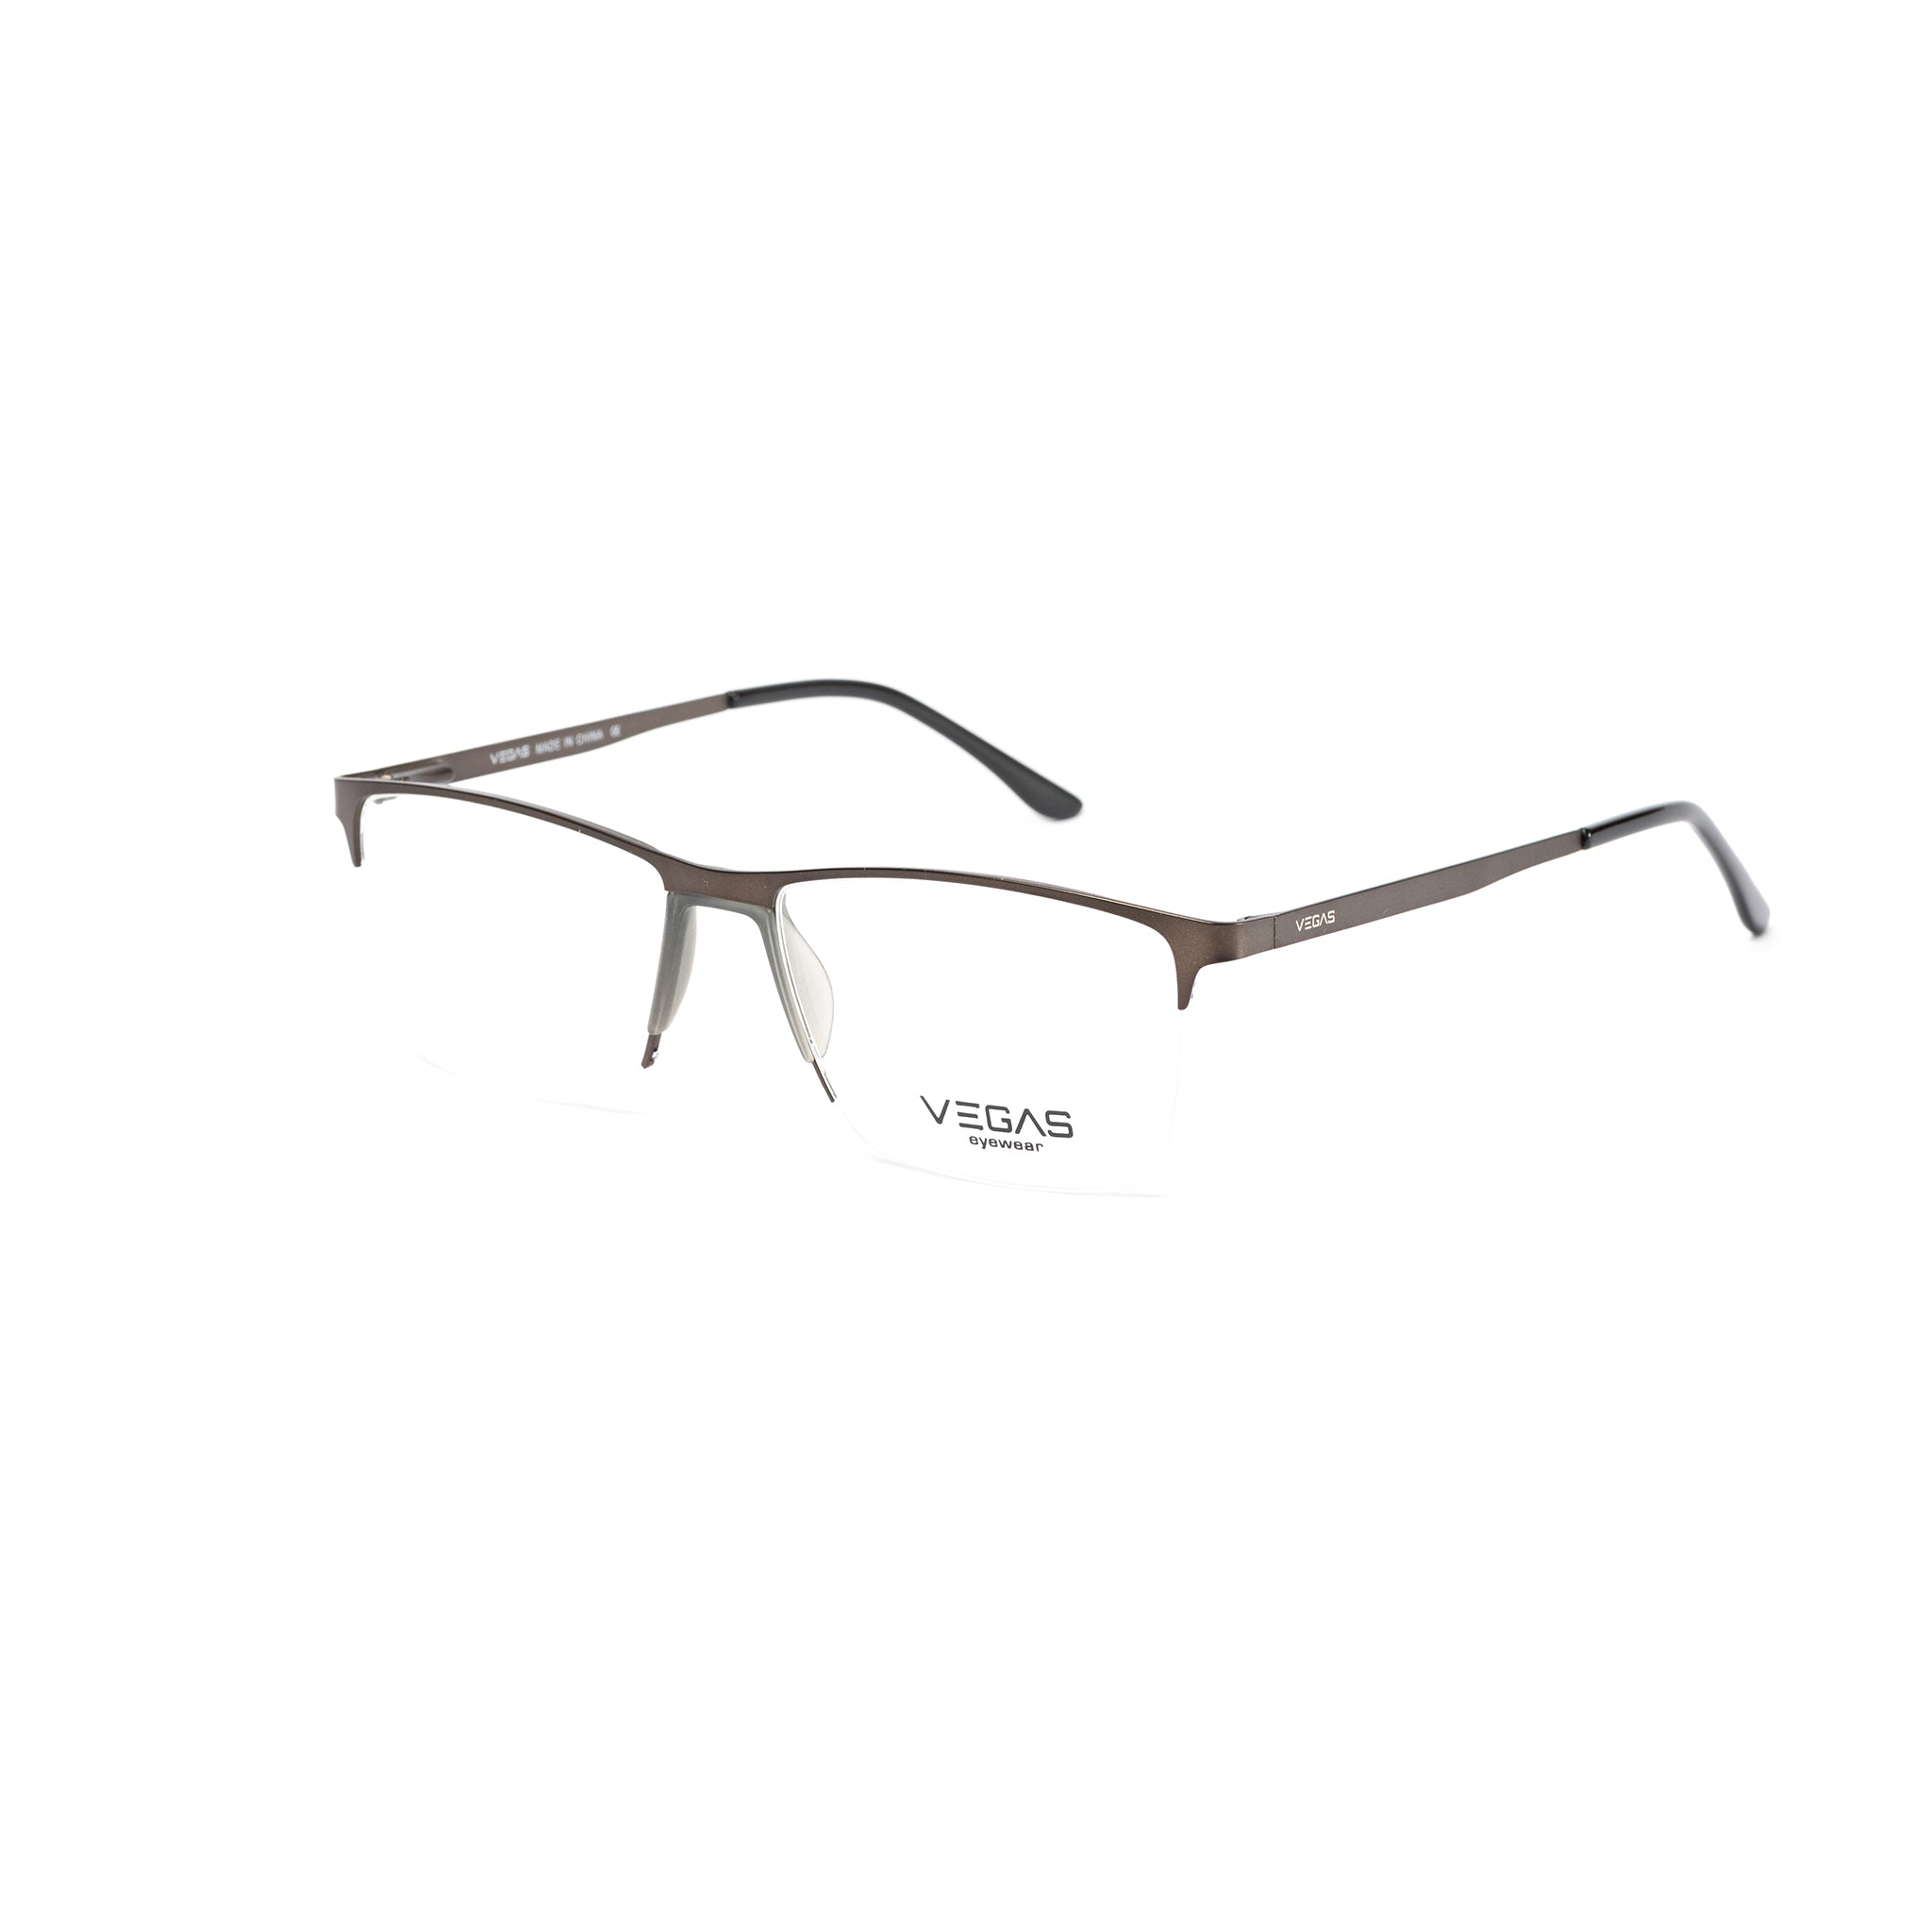 VEGAS P8510 - COC Eyewear